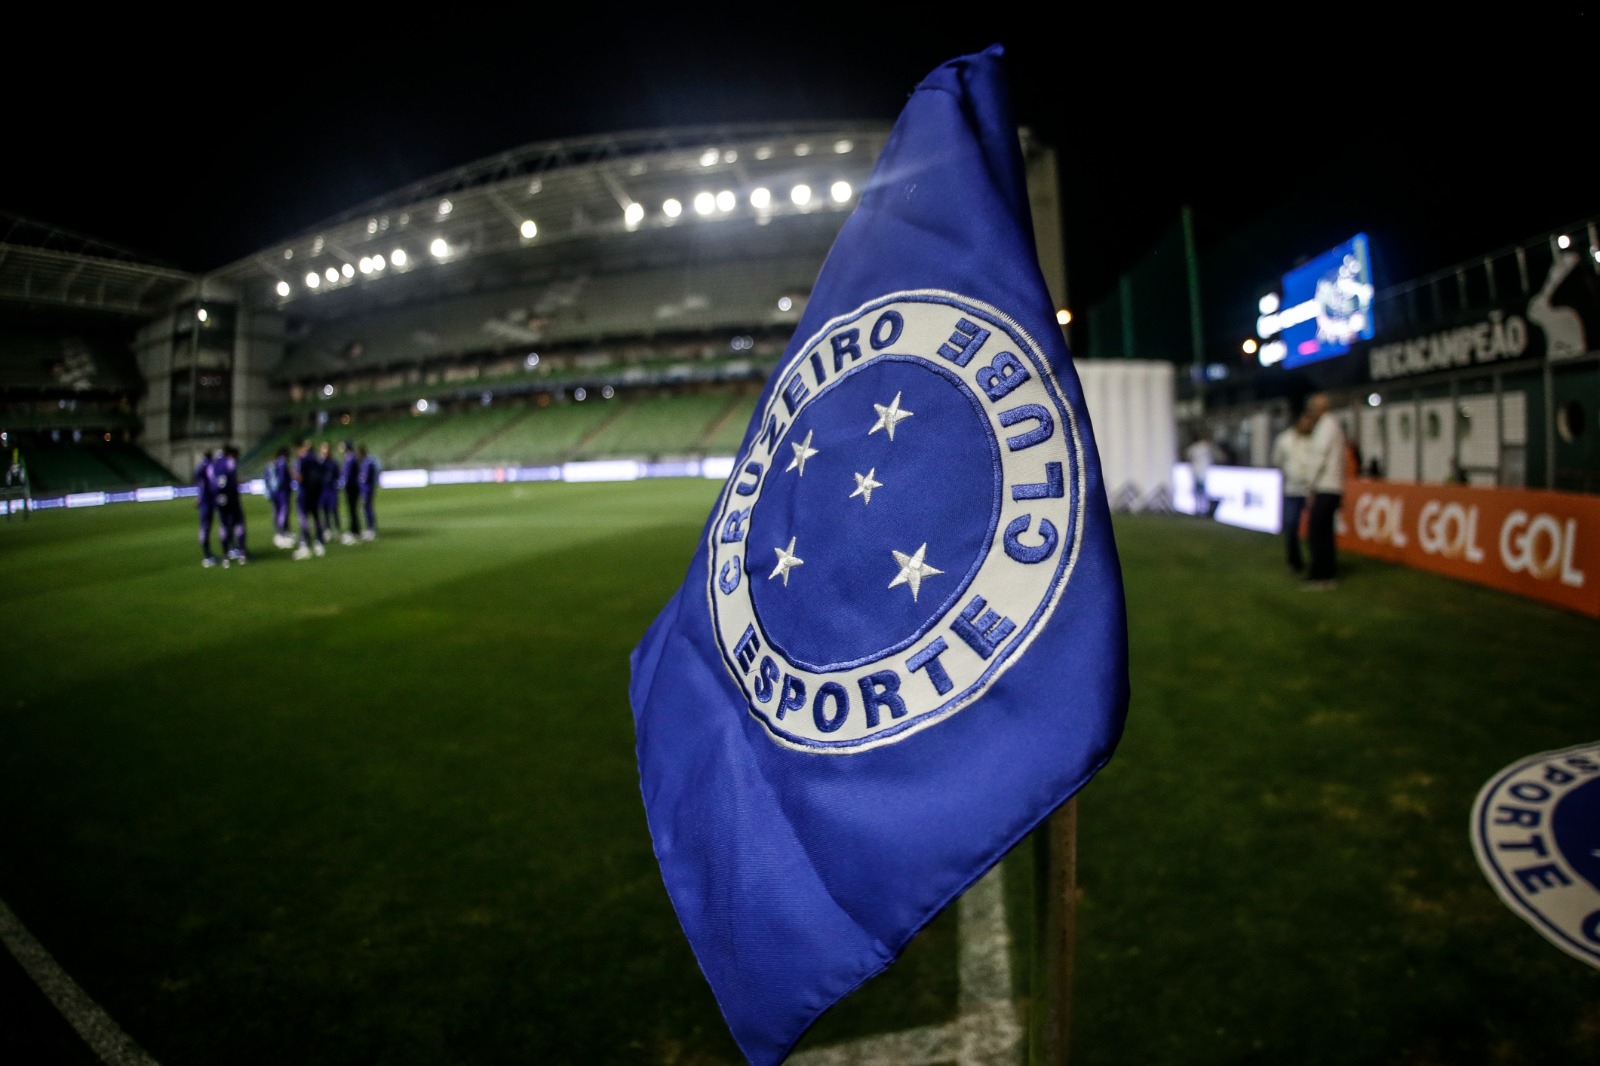 Venda de ingressos para Cruzeiro x Santos, na tarde de sábado, se inicia nesta terça